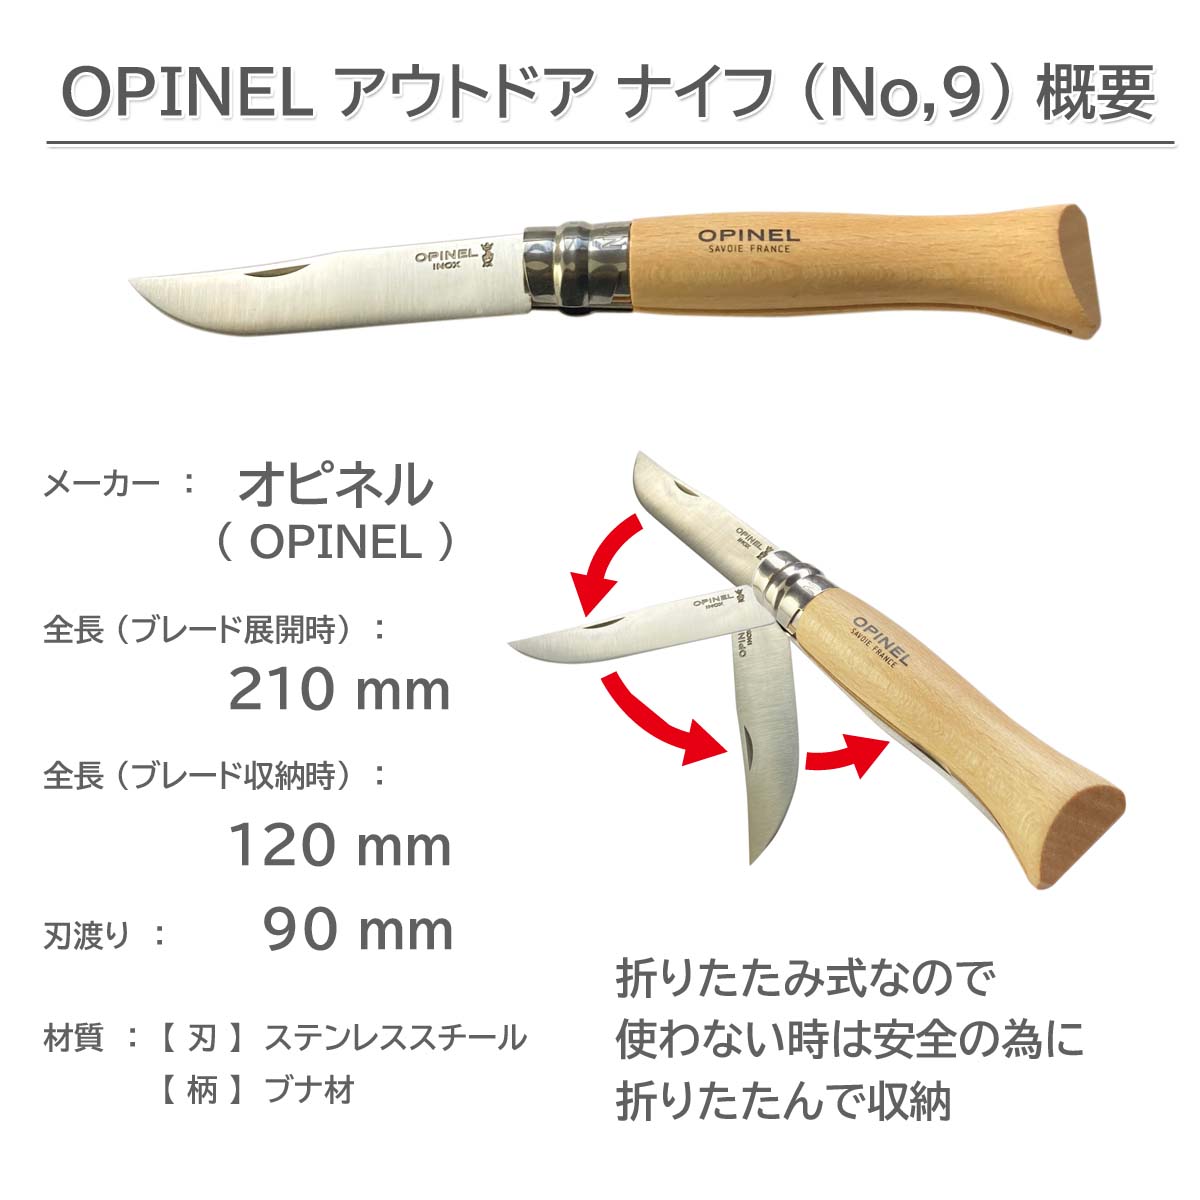 OPINEL No,9 アウトドア・フォールディング ナイフ